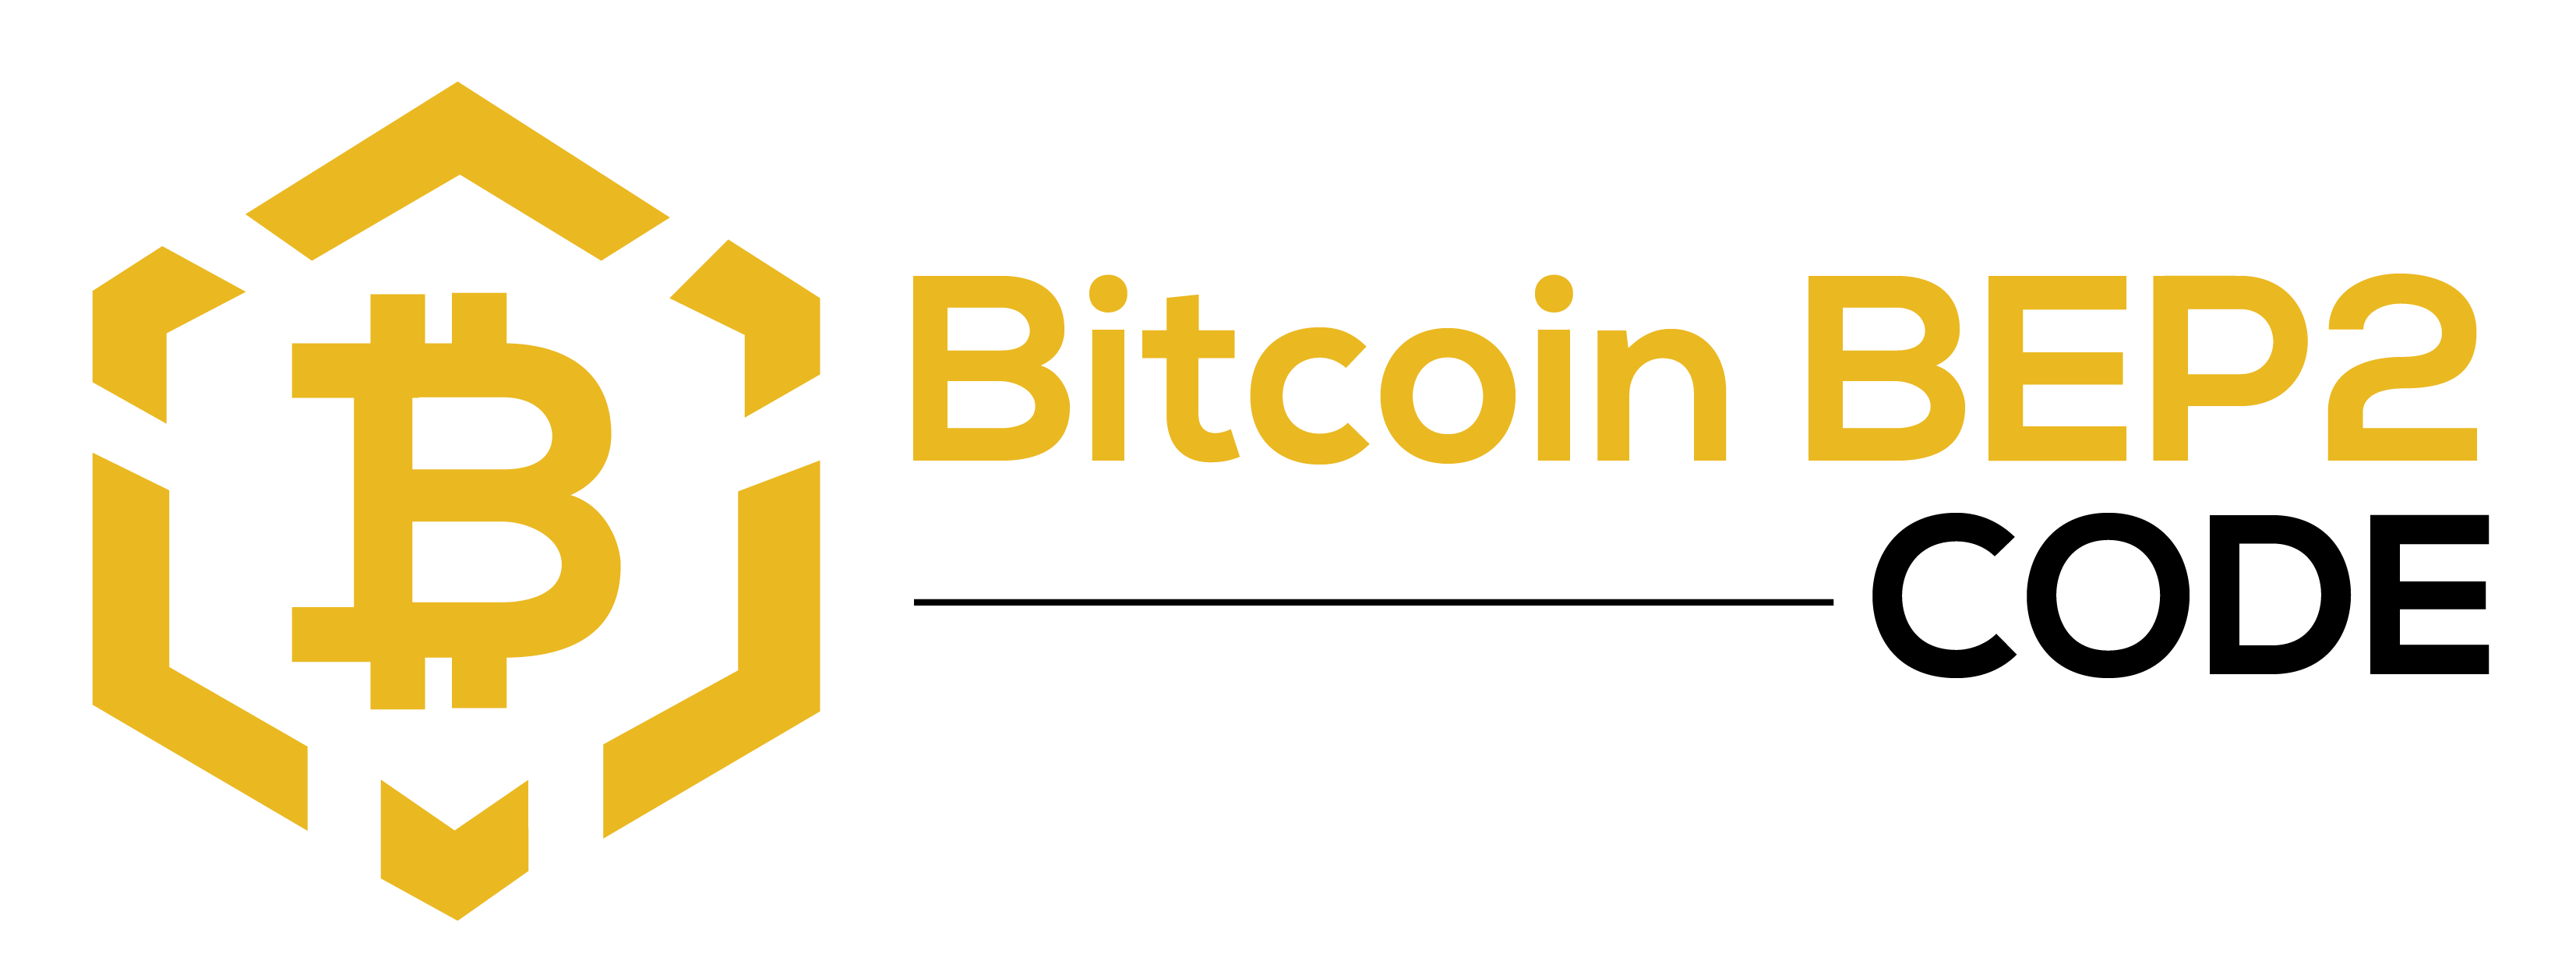 Bitcoin BEP2 Code - Команда Bitcoin BEP2 Code